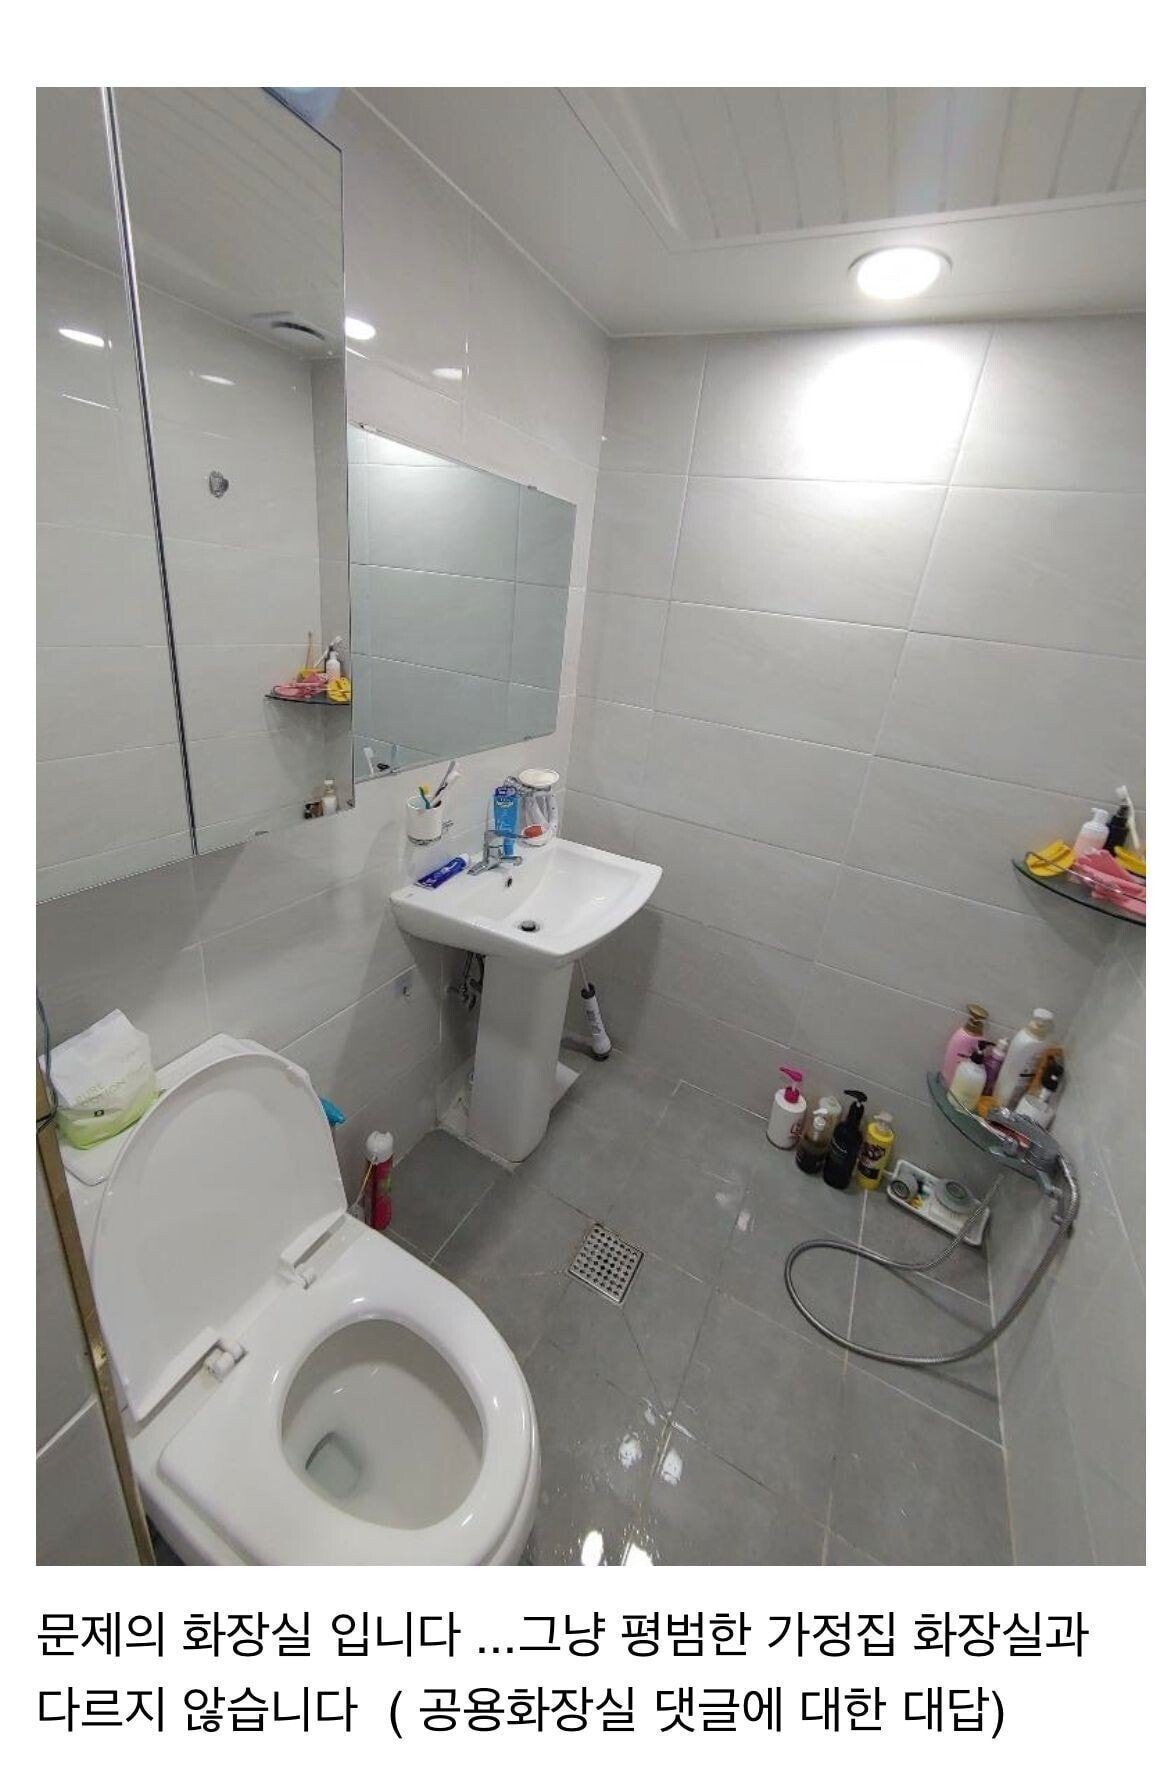 トイレに無断侵入したカーニバル家族が使用したトイレの写真と構造